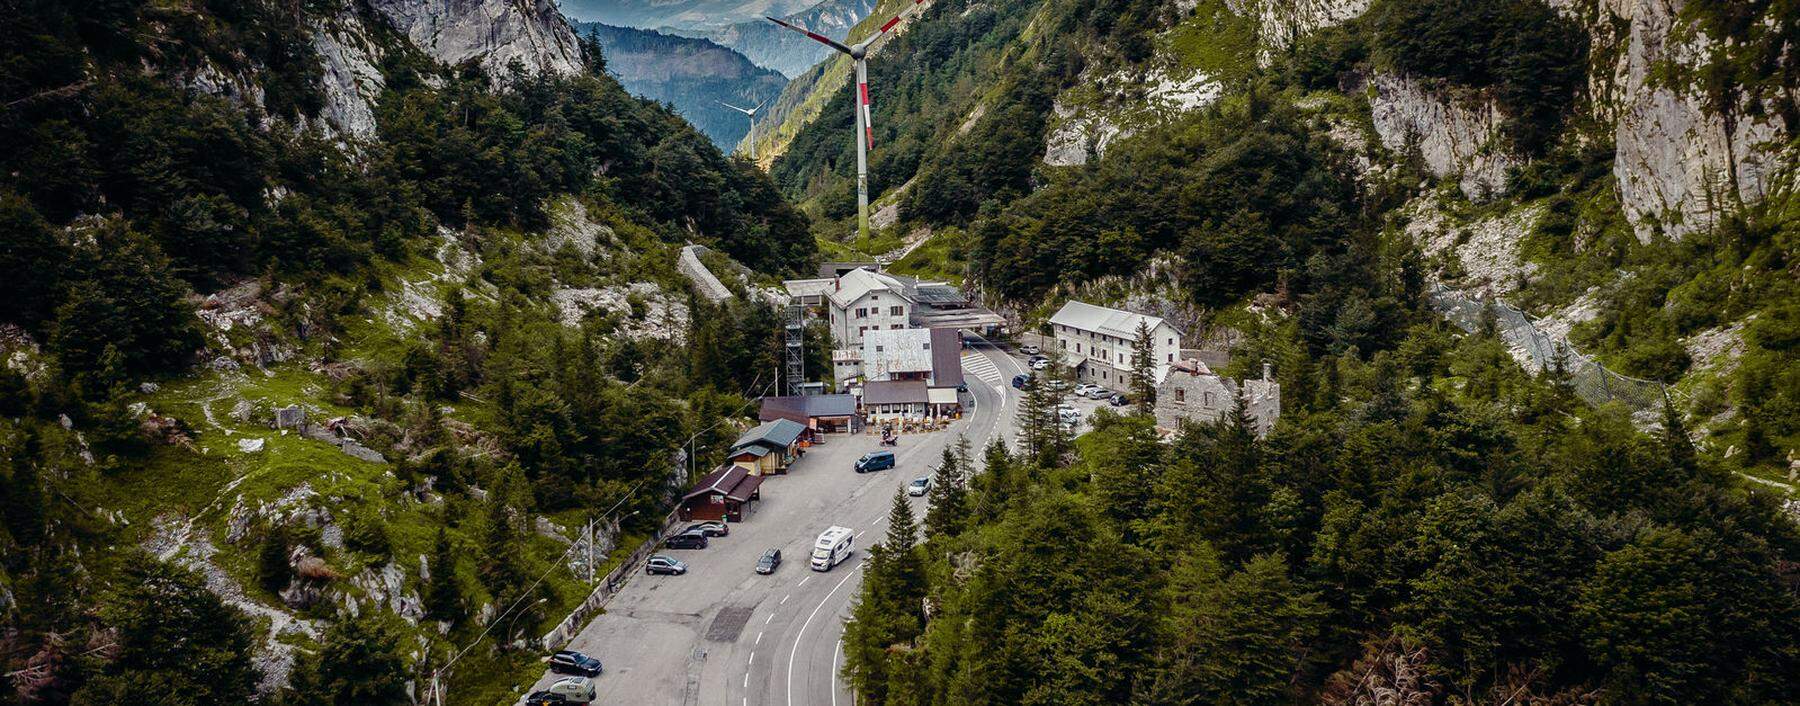 Die Grenzen der Republik Österreich: hier der Plöckenpass in den Karnischen Alpen, der Kärnten von Italien trennt.